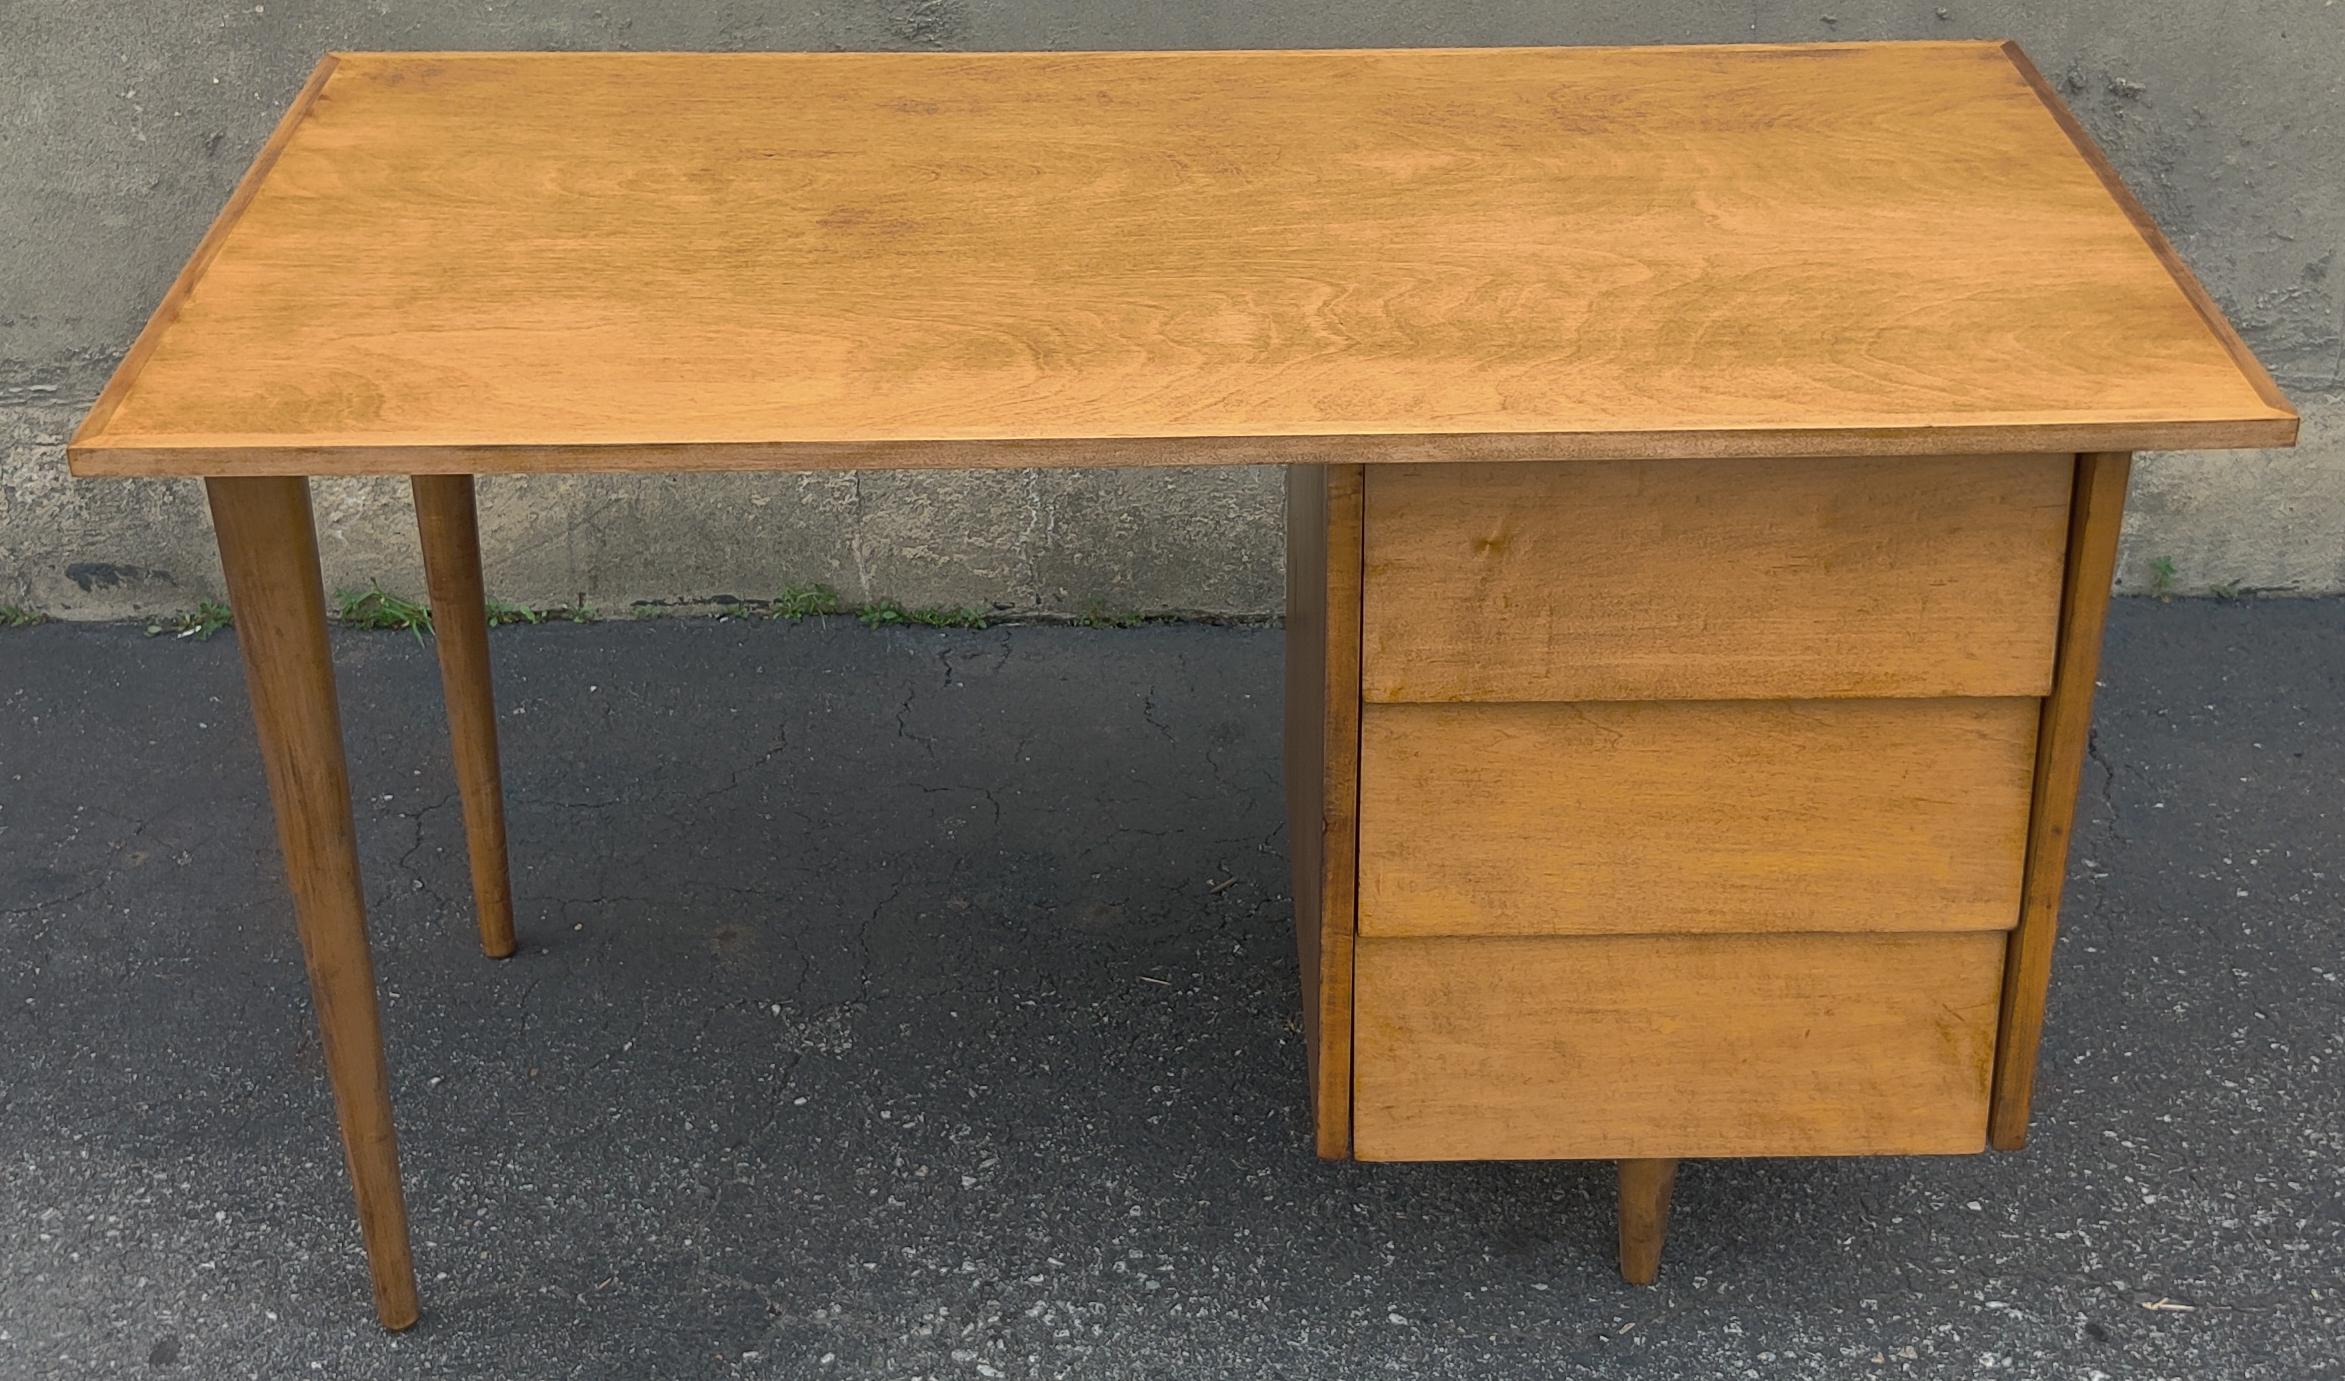 Dieser seltene Schreibtisch wurde in den 1950er Jahren von Florence Knoll entworfen. Sein schlichtes Profil hat sich als zeitlos erwiesen! Er ist aus massivem Ahornholz gefertigt und verfügt über konisch zulaufende Beine und einen einzelnen Sockel